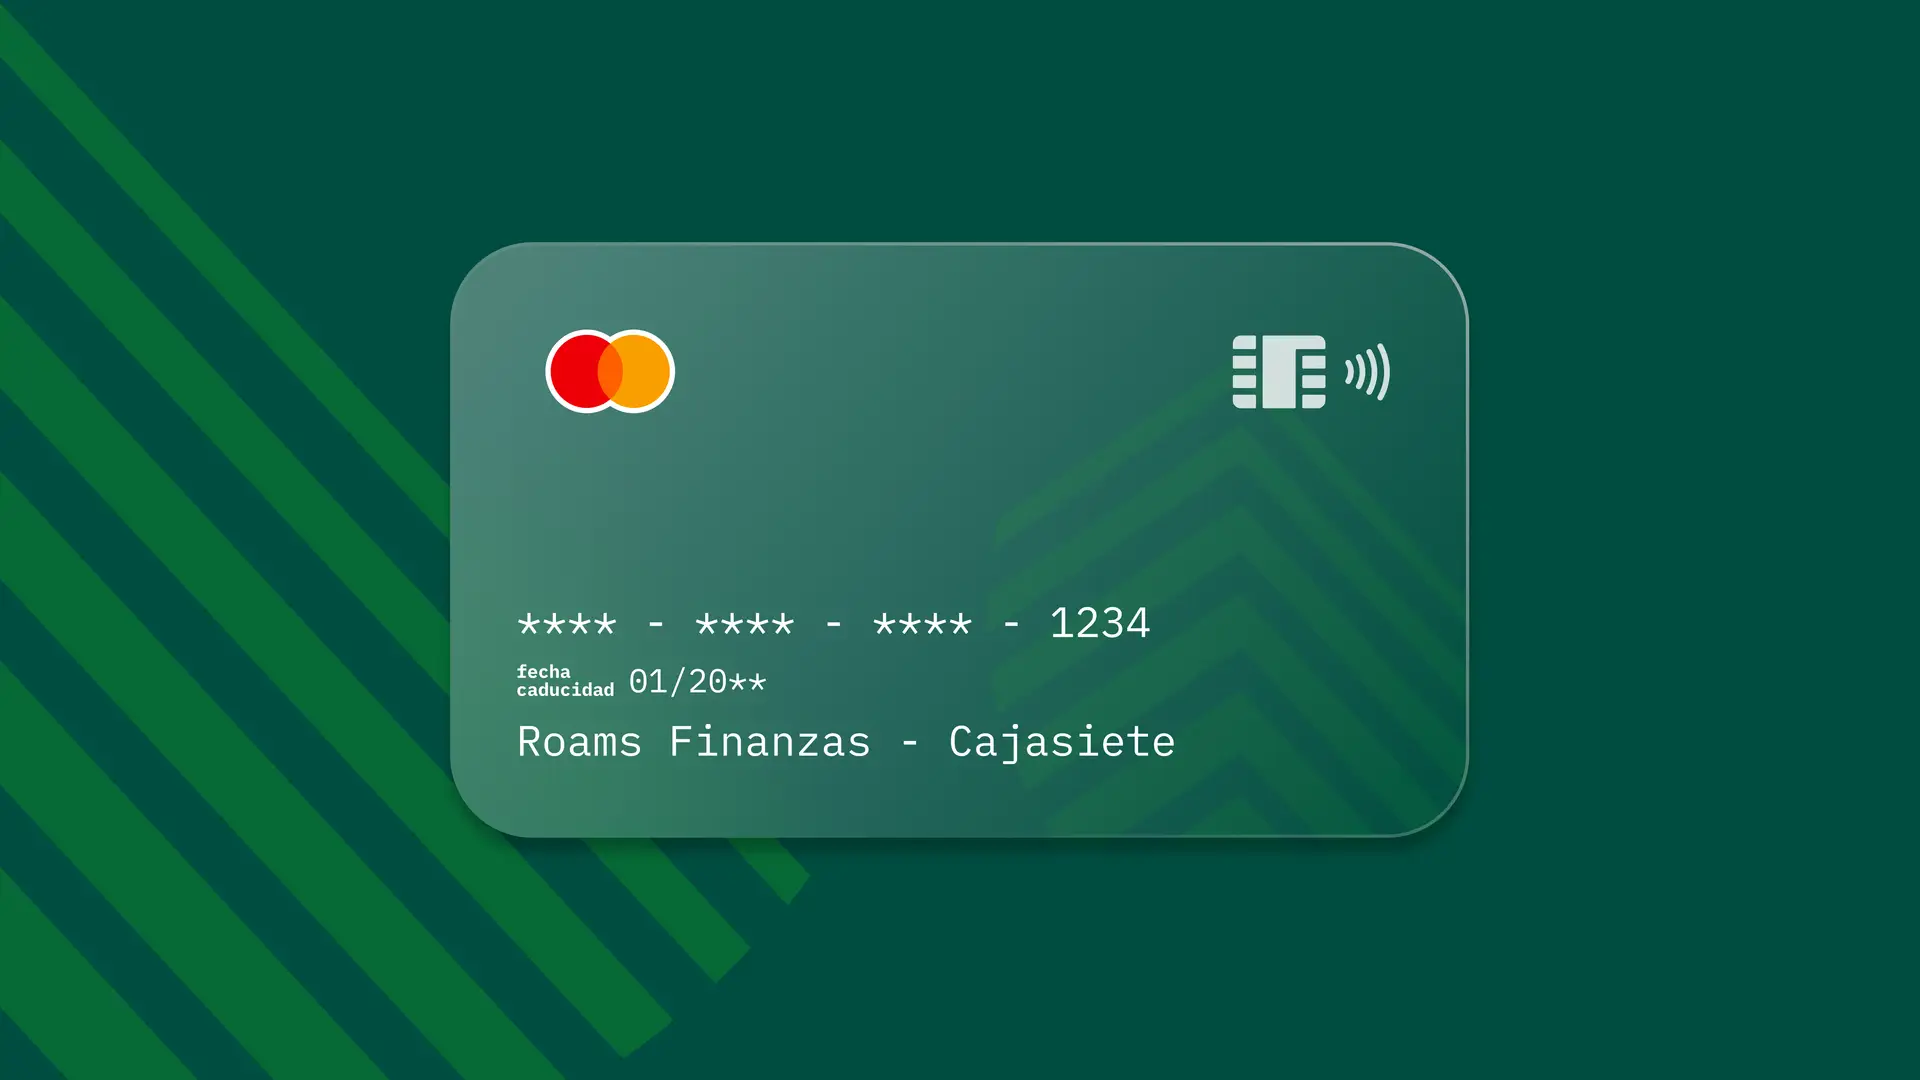 Simulación de una tarjeta de la entidad financiera Cajasiete creada por Roams.